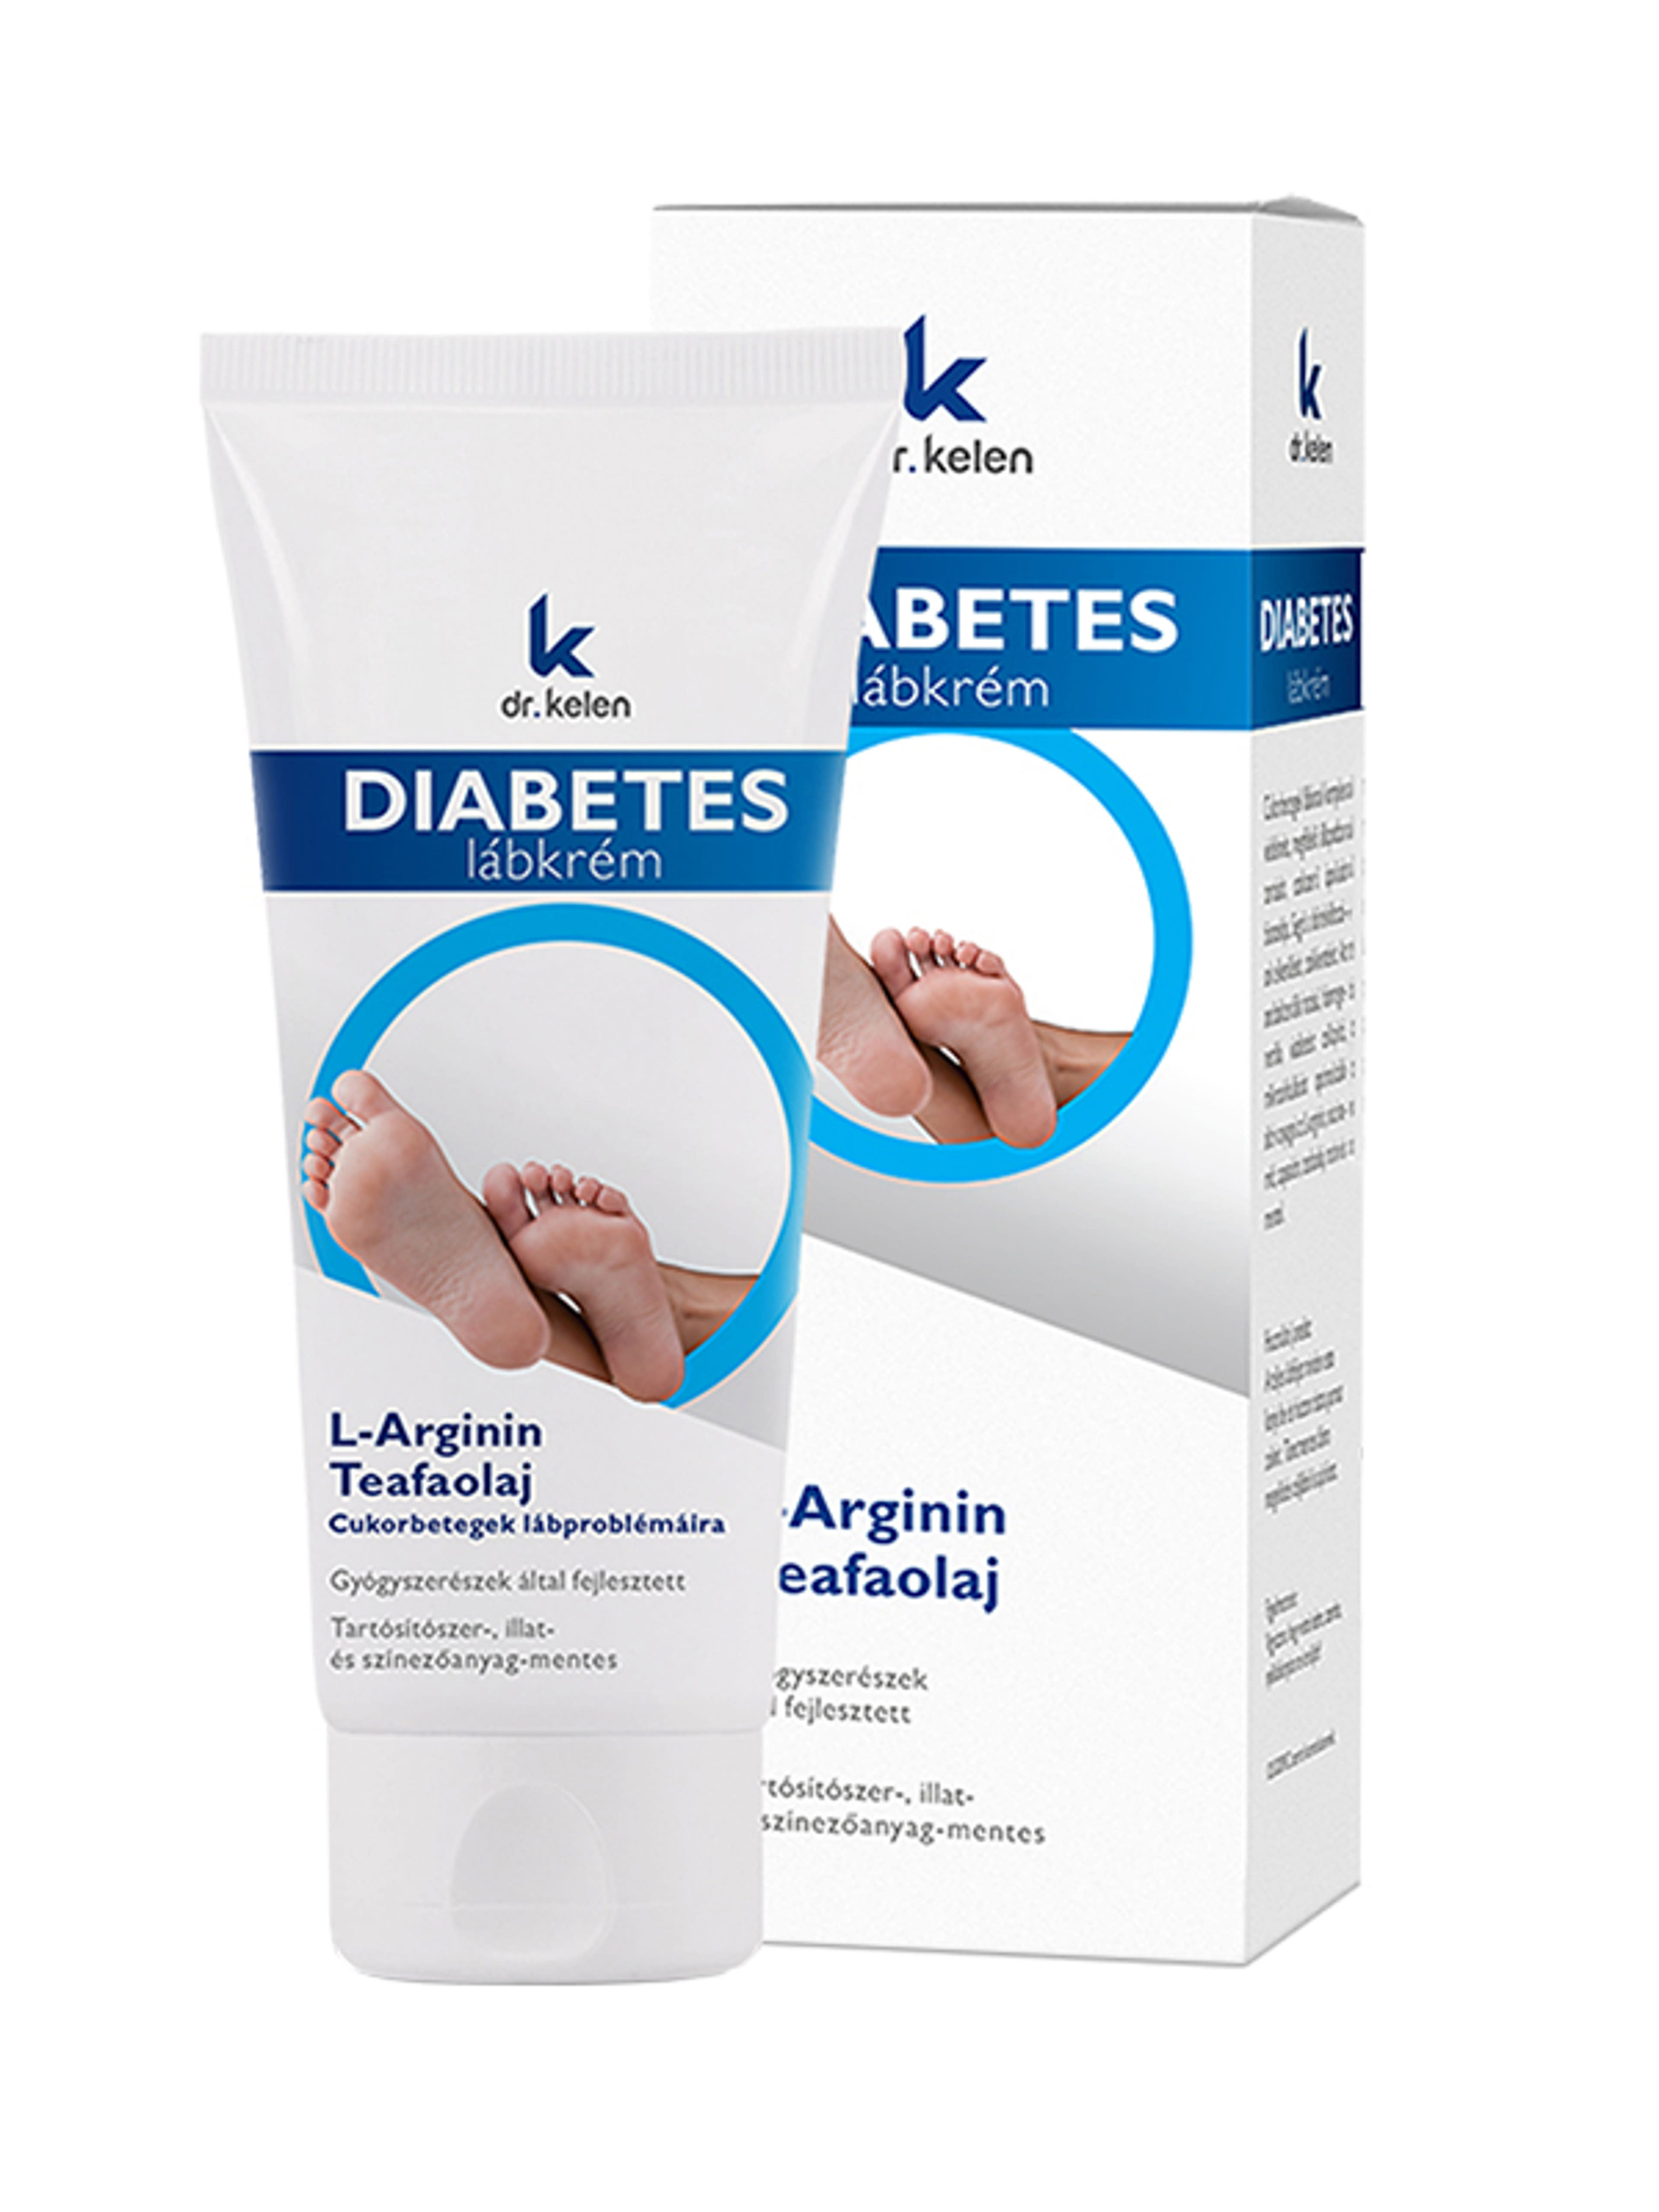 Dr.Kelen Diabetes lábkrém cukorbetegek részére - 100 ml-3